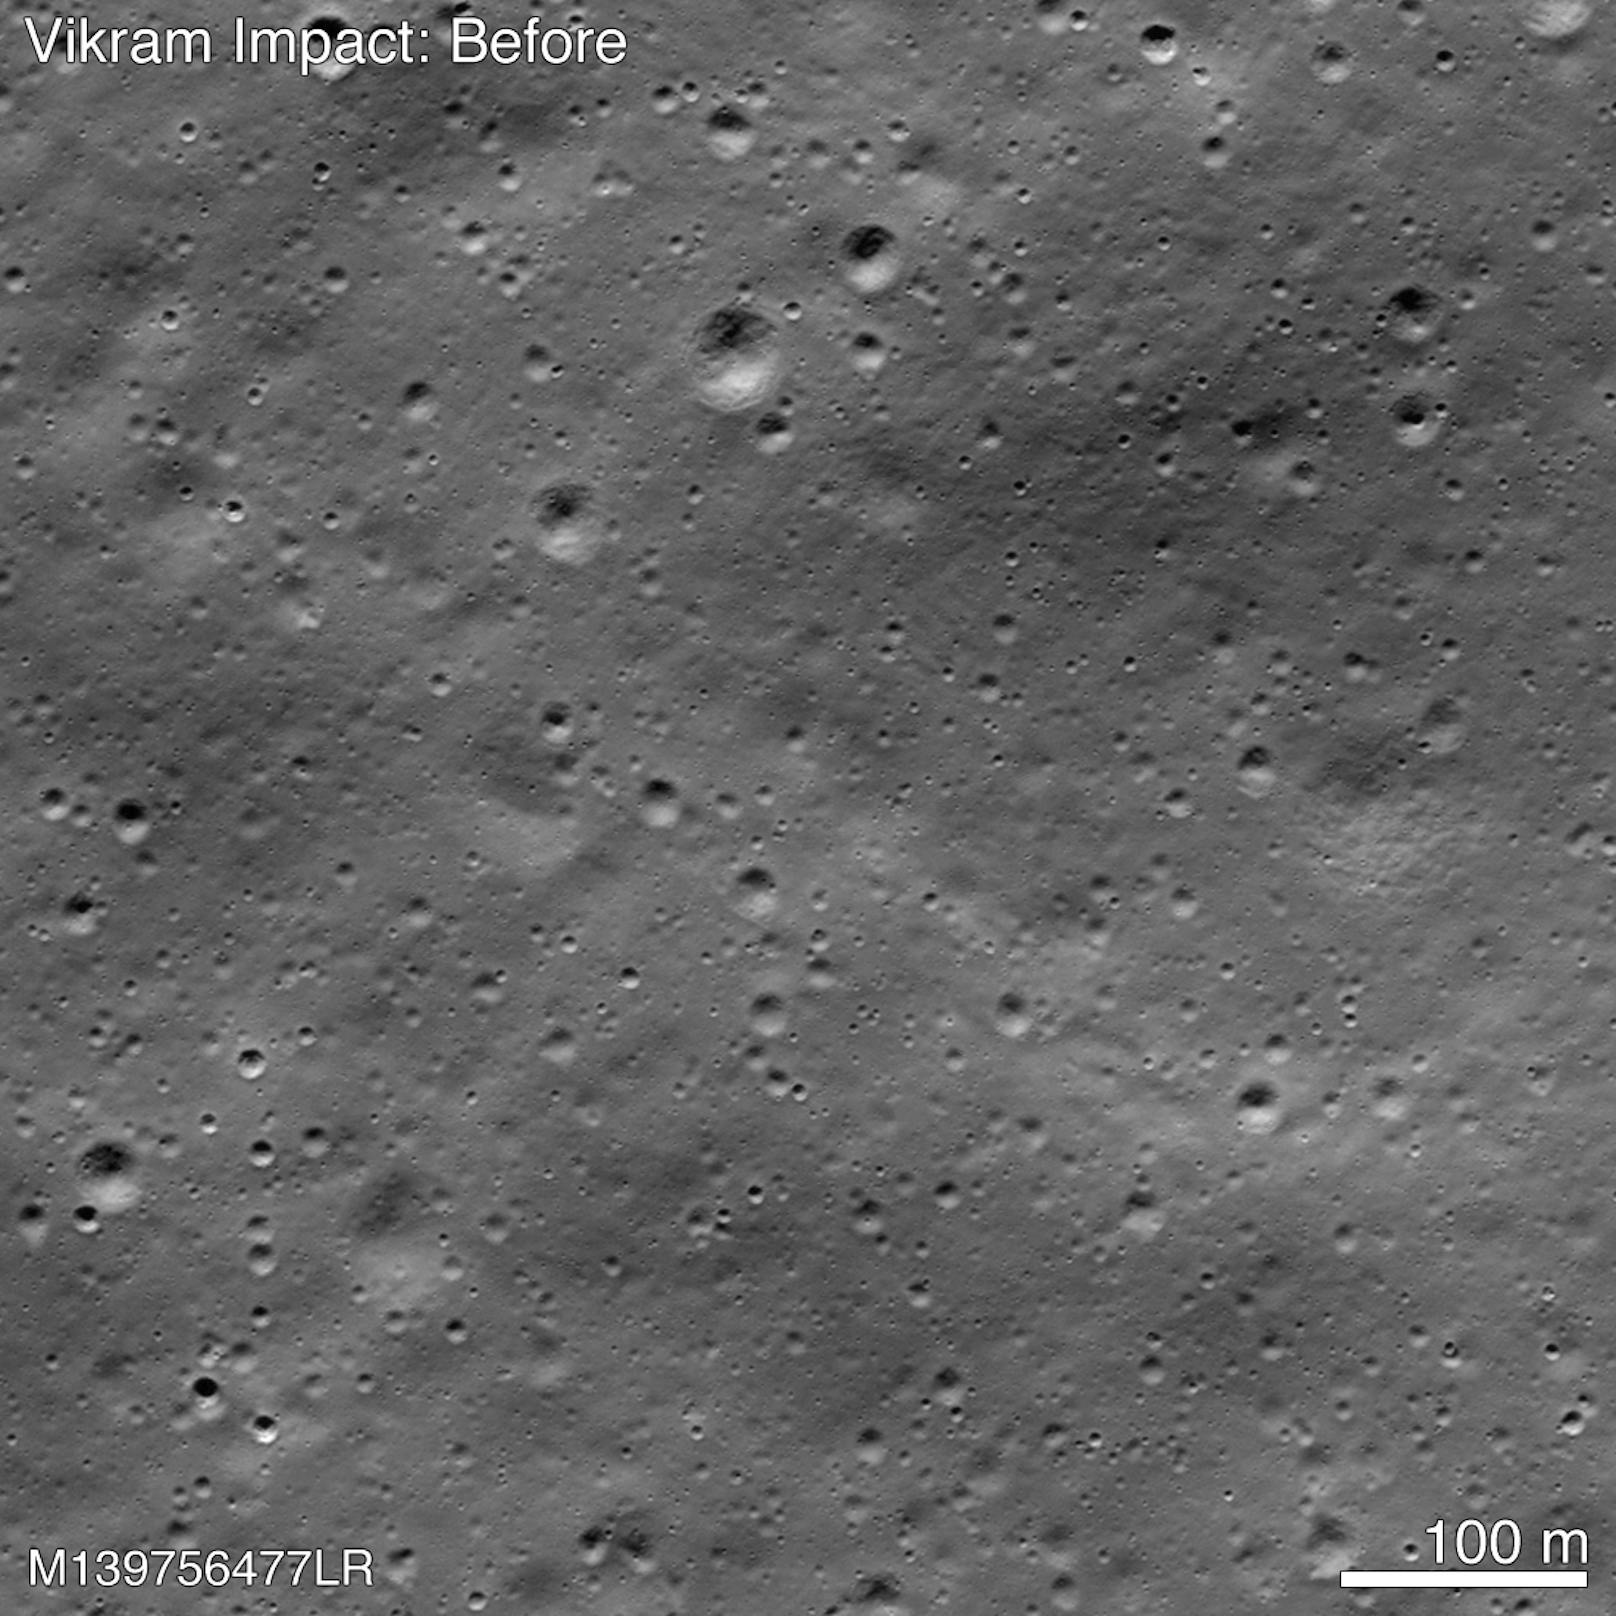 Shanmuga Subramanian hatte wochenlang NASA-Bilder der Mondoberfläche vor und nach fehlgeschlagenen Landeversuch von Vikram verglichen und dabei winzige Irregularitäten im Regolith entdeckt.